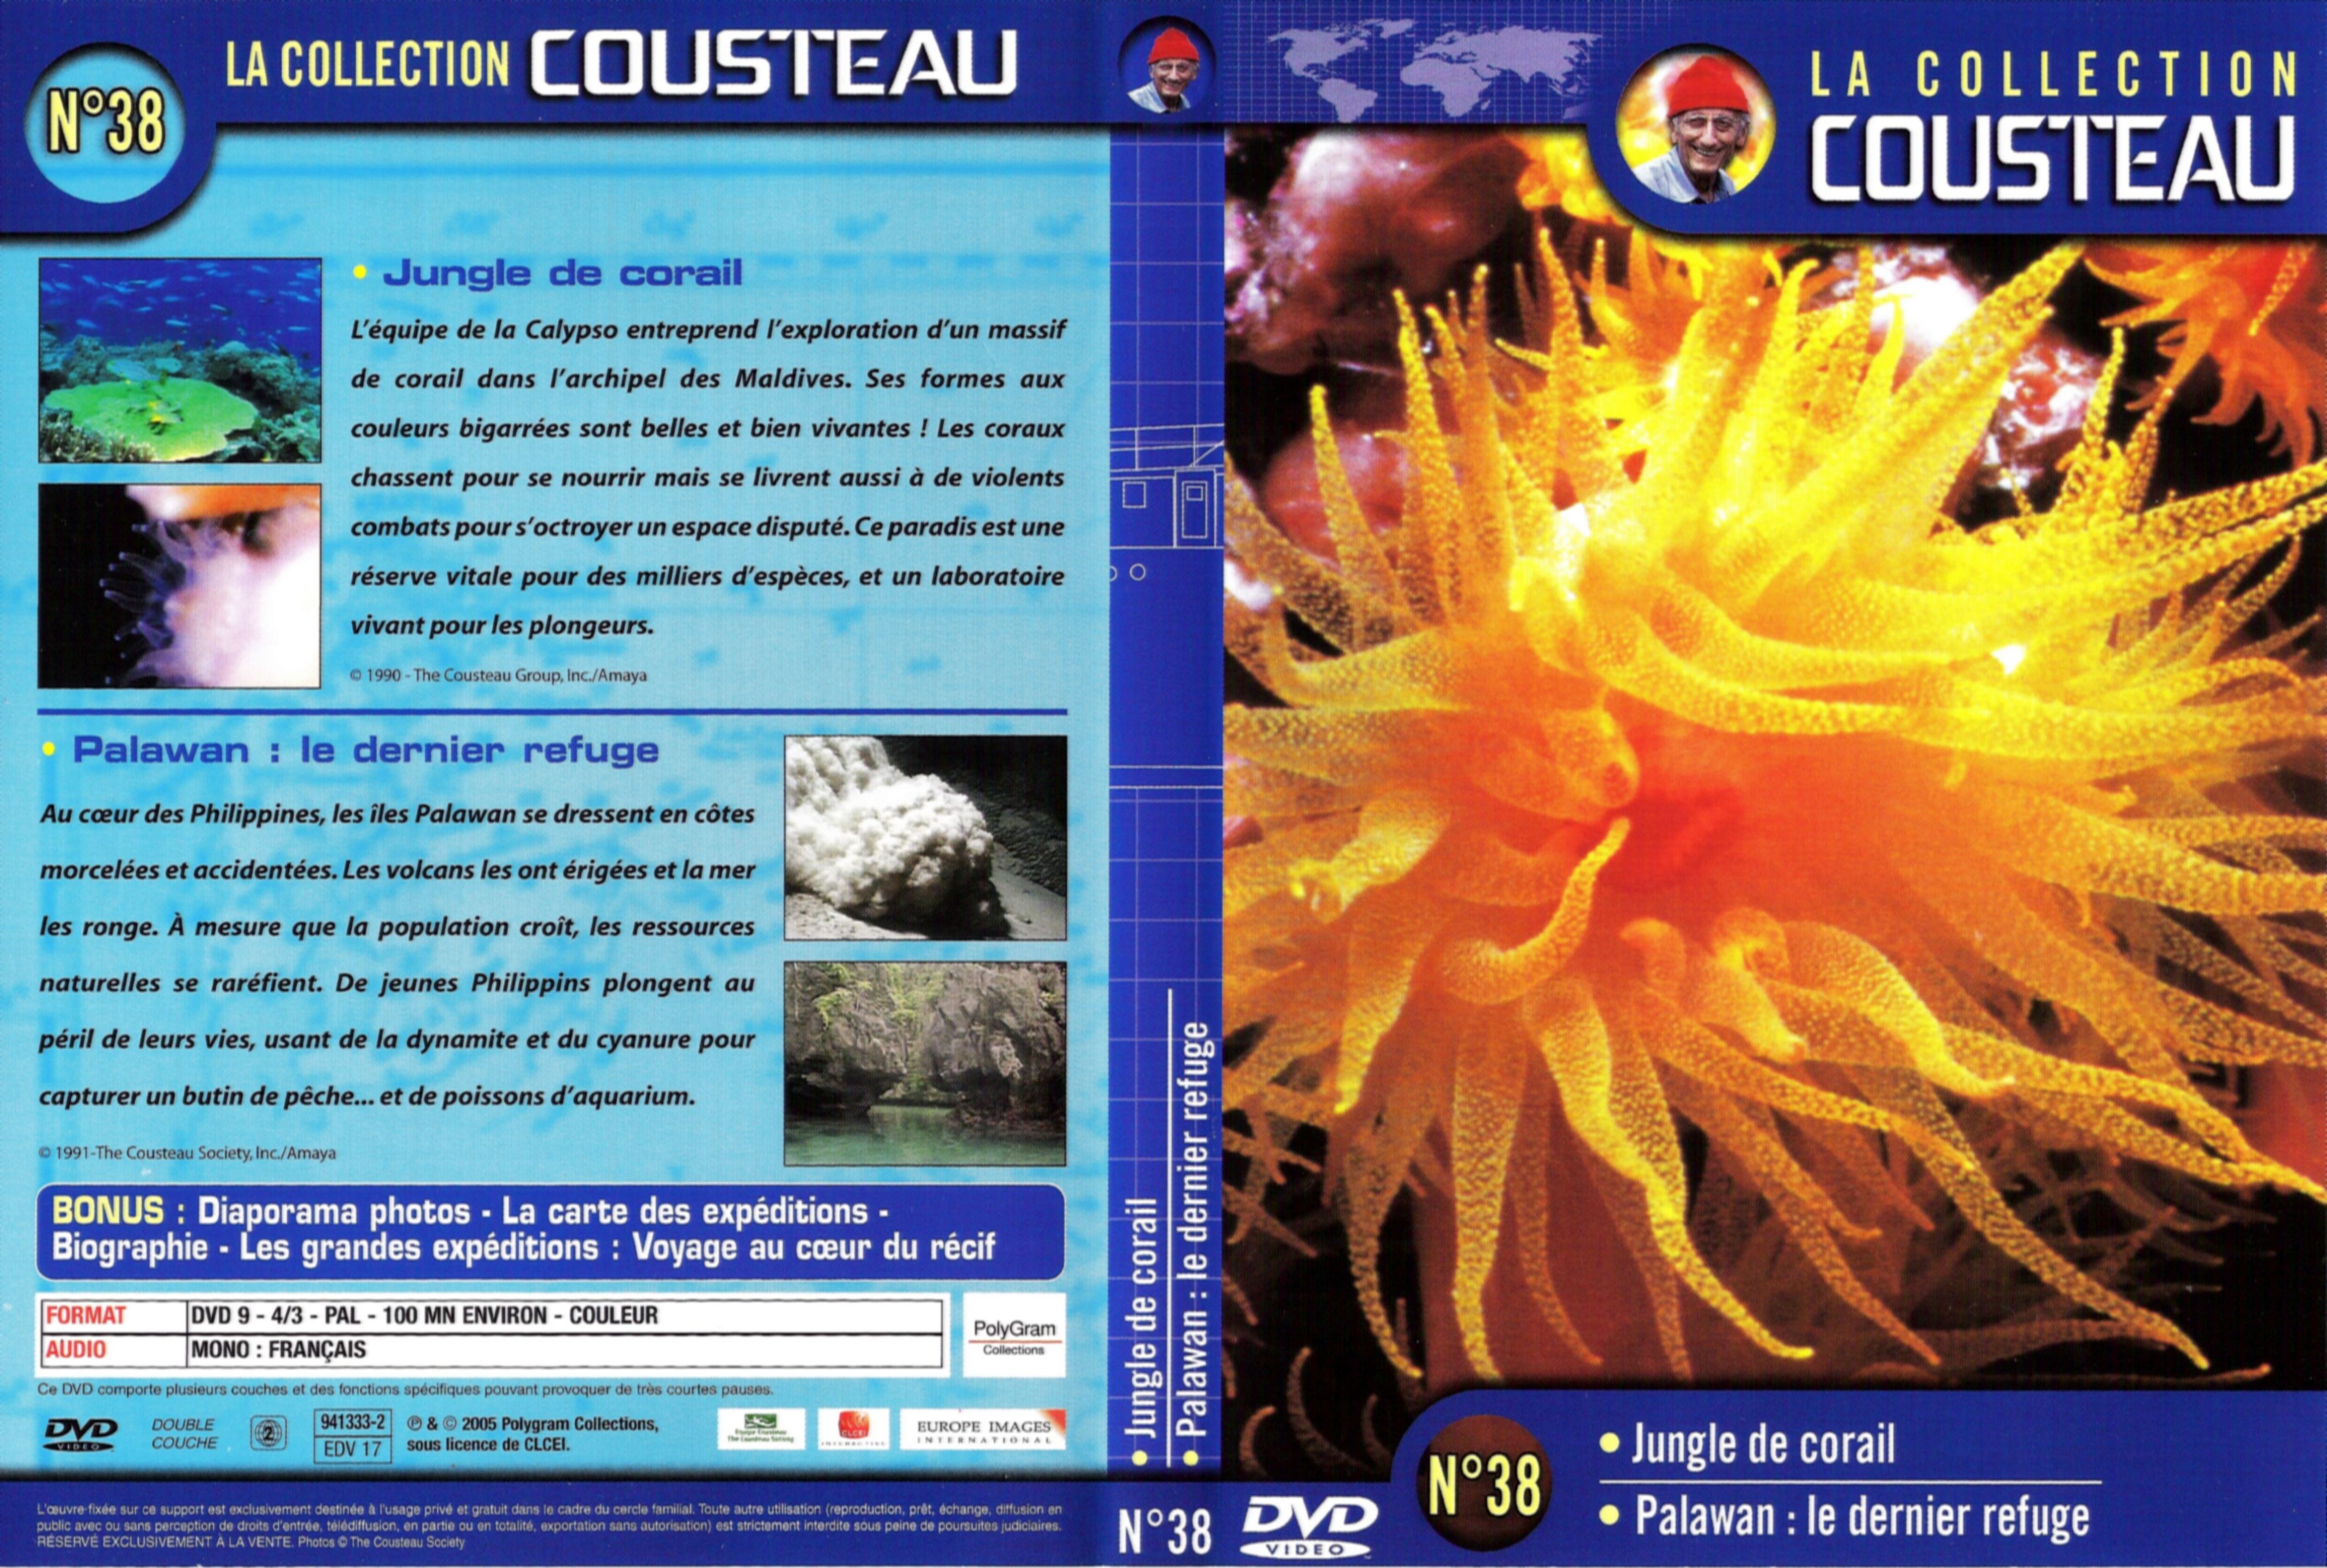 Jaquette DVD Cousteau Collection vol 38